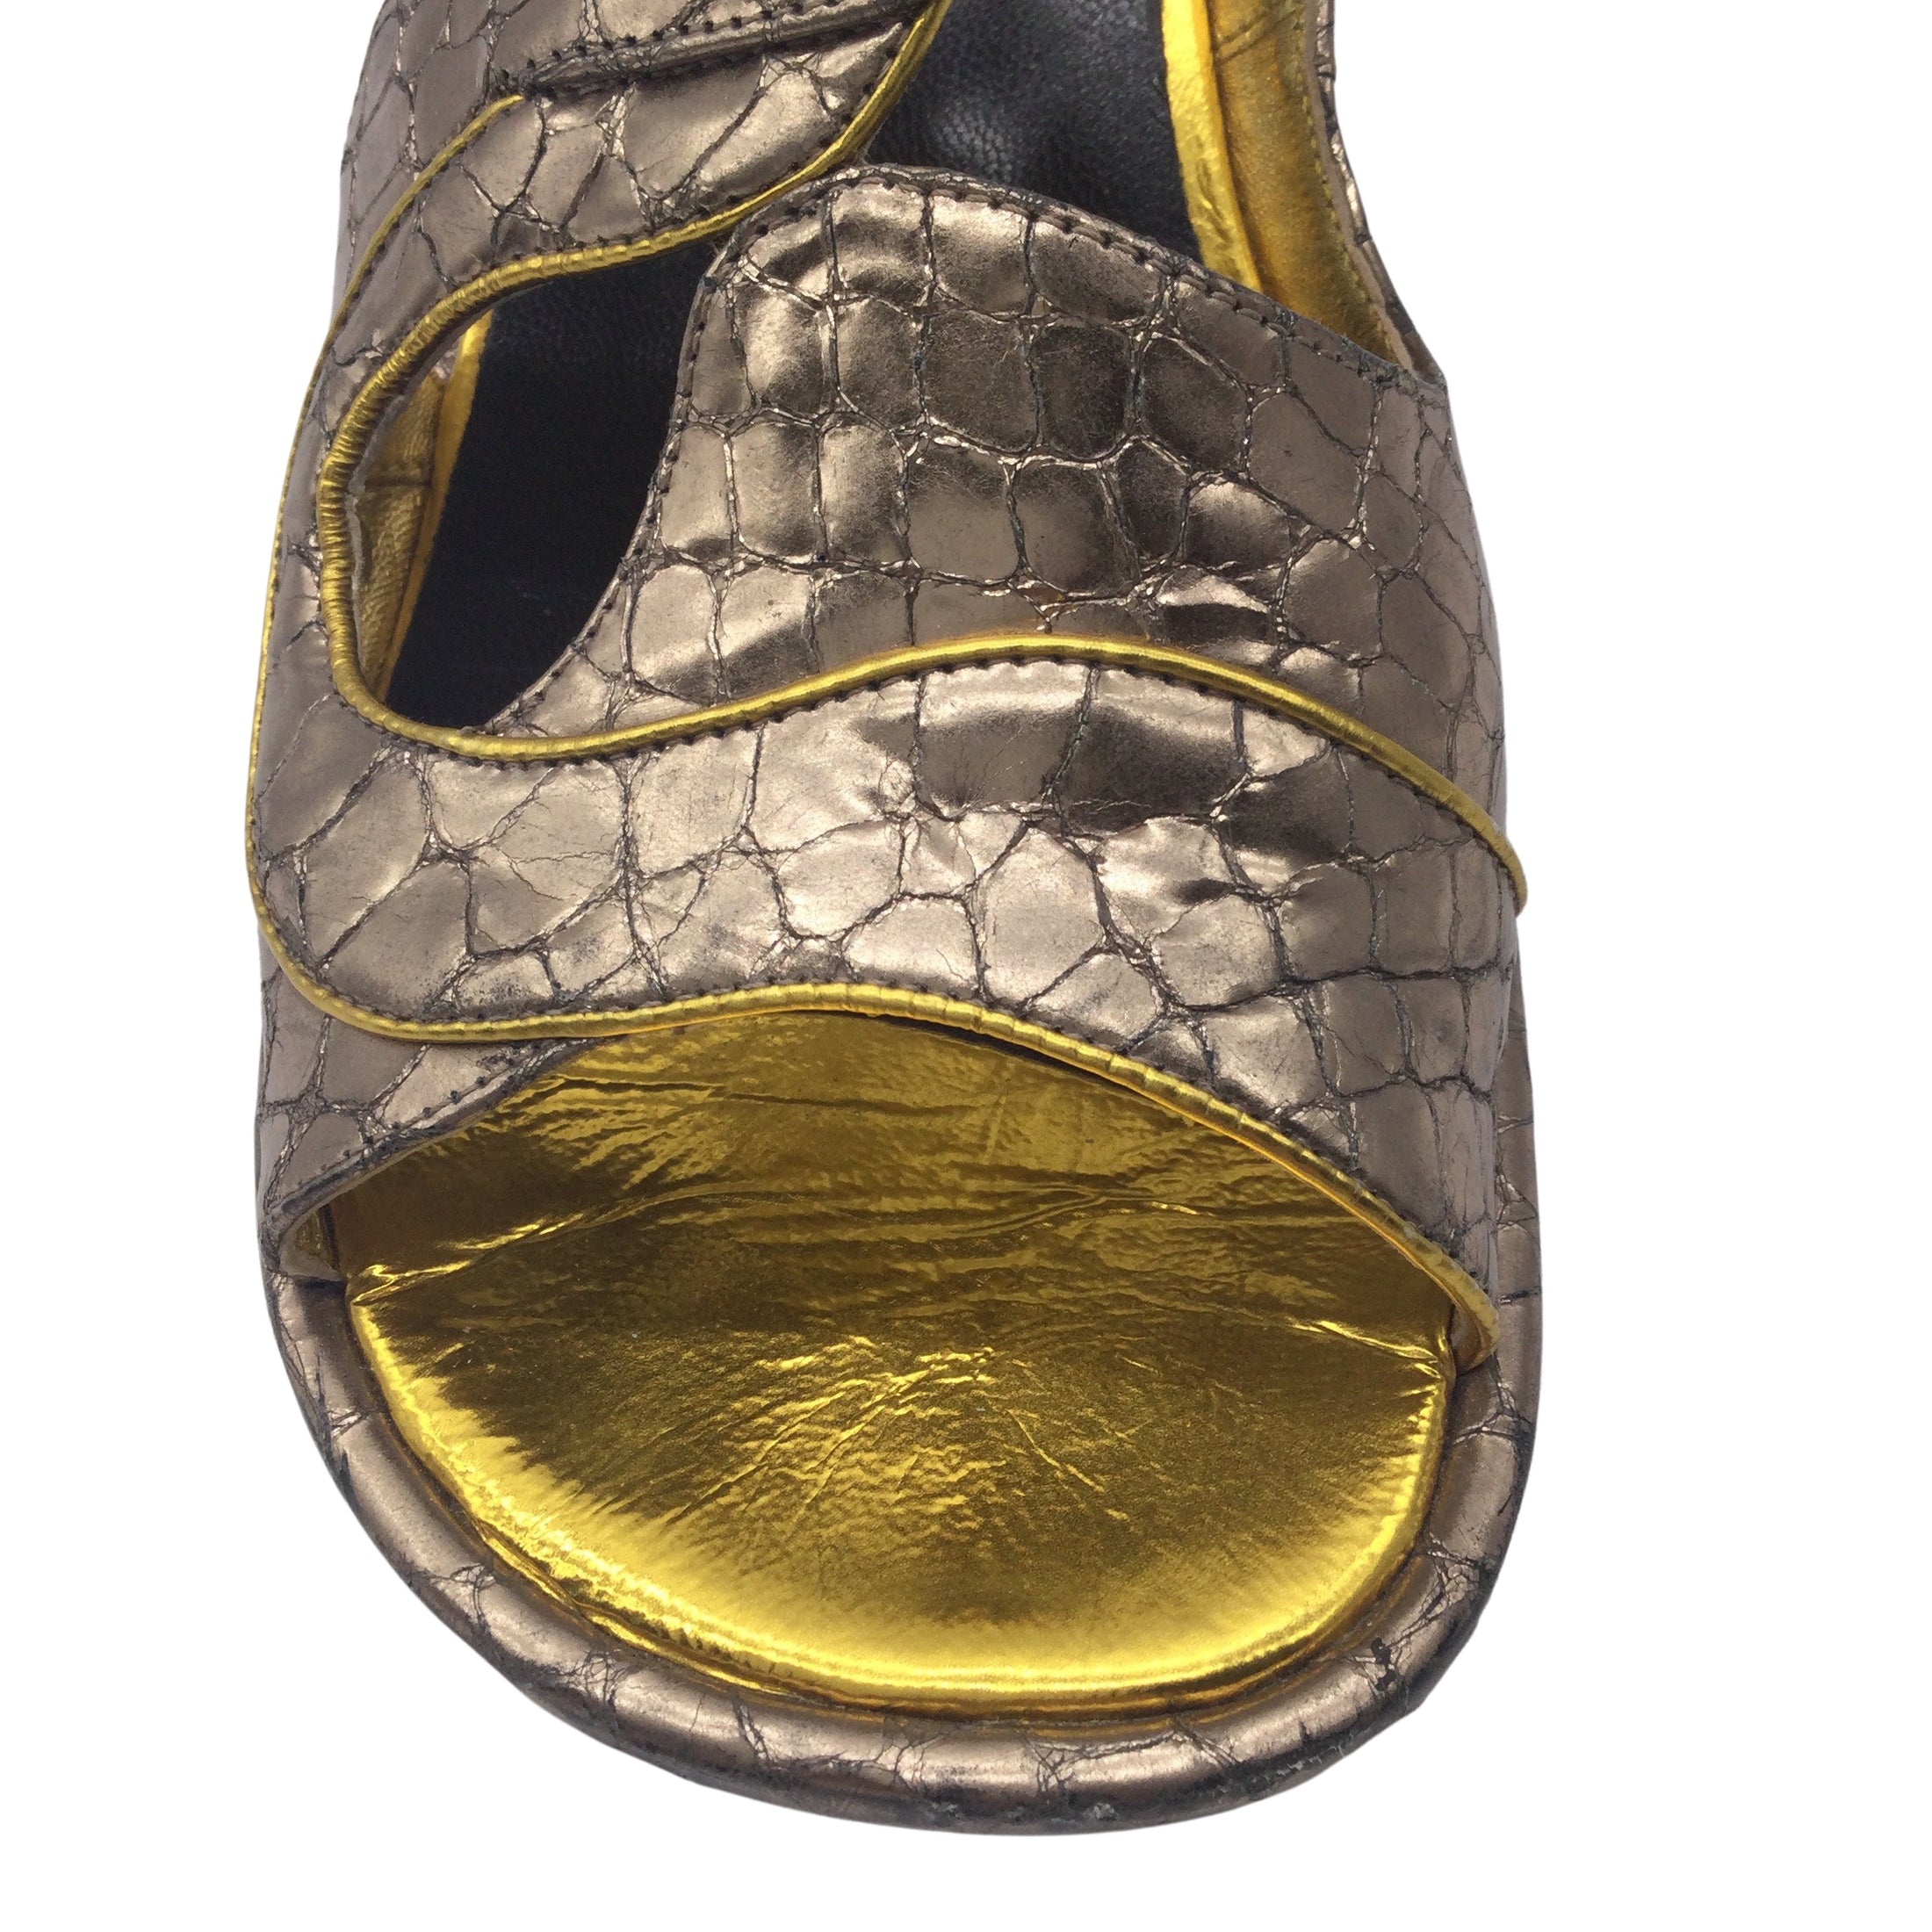 Dries van Noten Bronze Metallic Snakeskin Leather Sandals